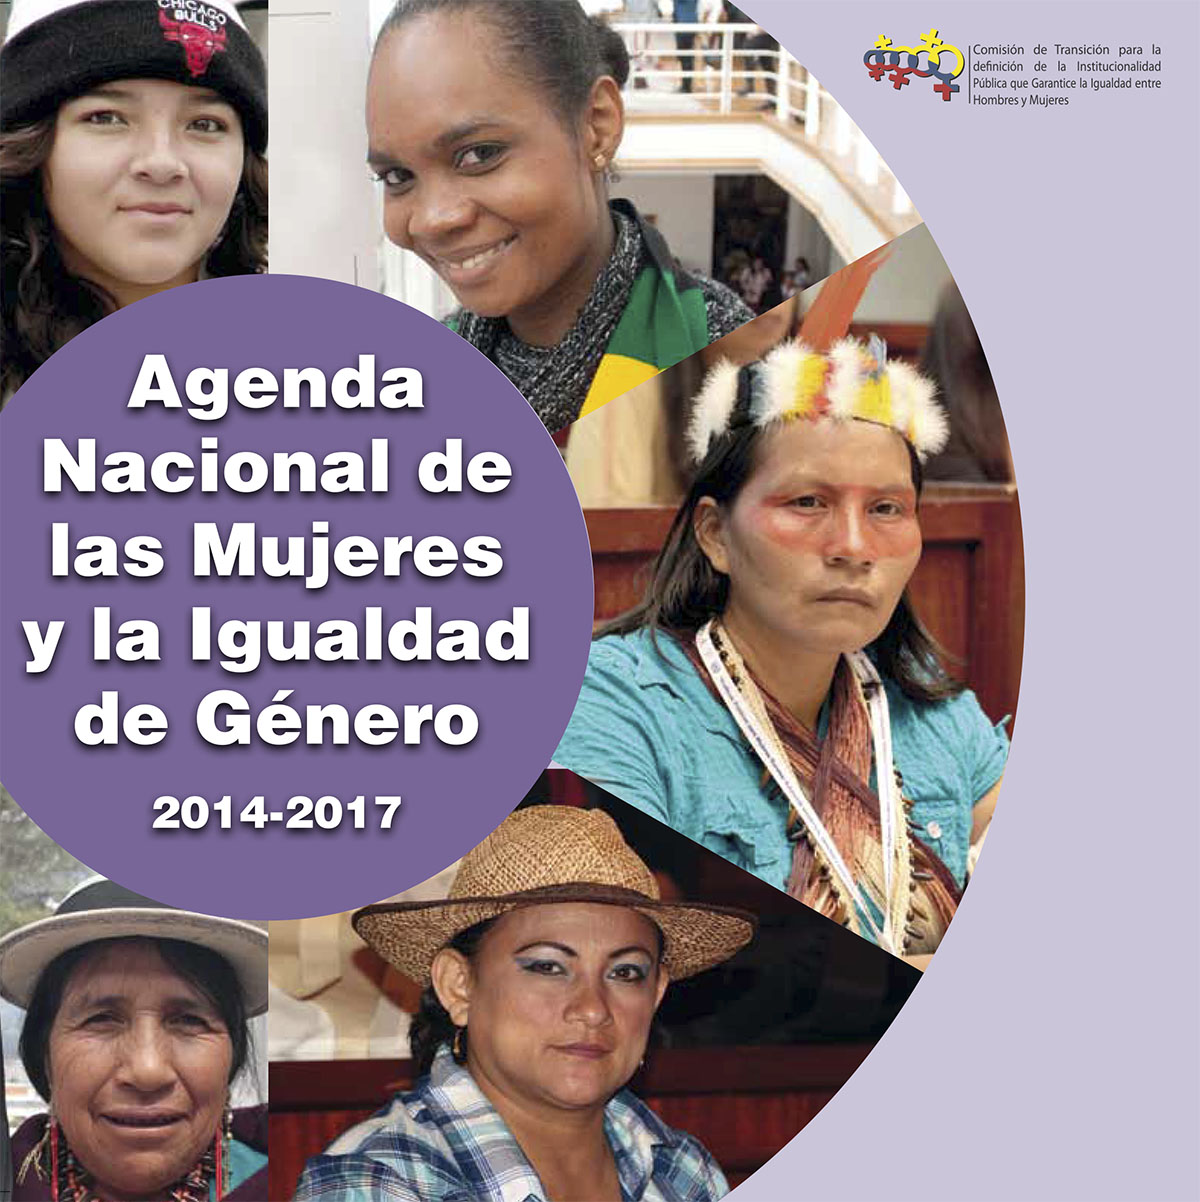 Agenda nacional de las mujeres y la igualdad de género 2014-2017